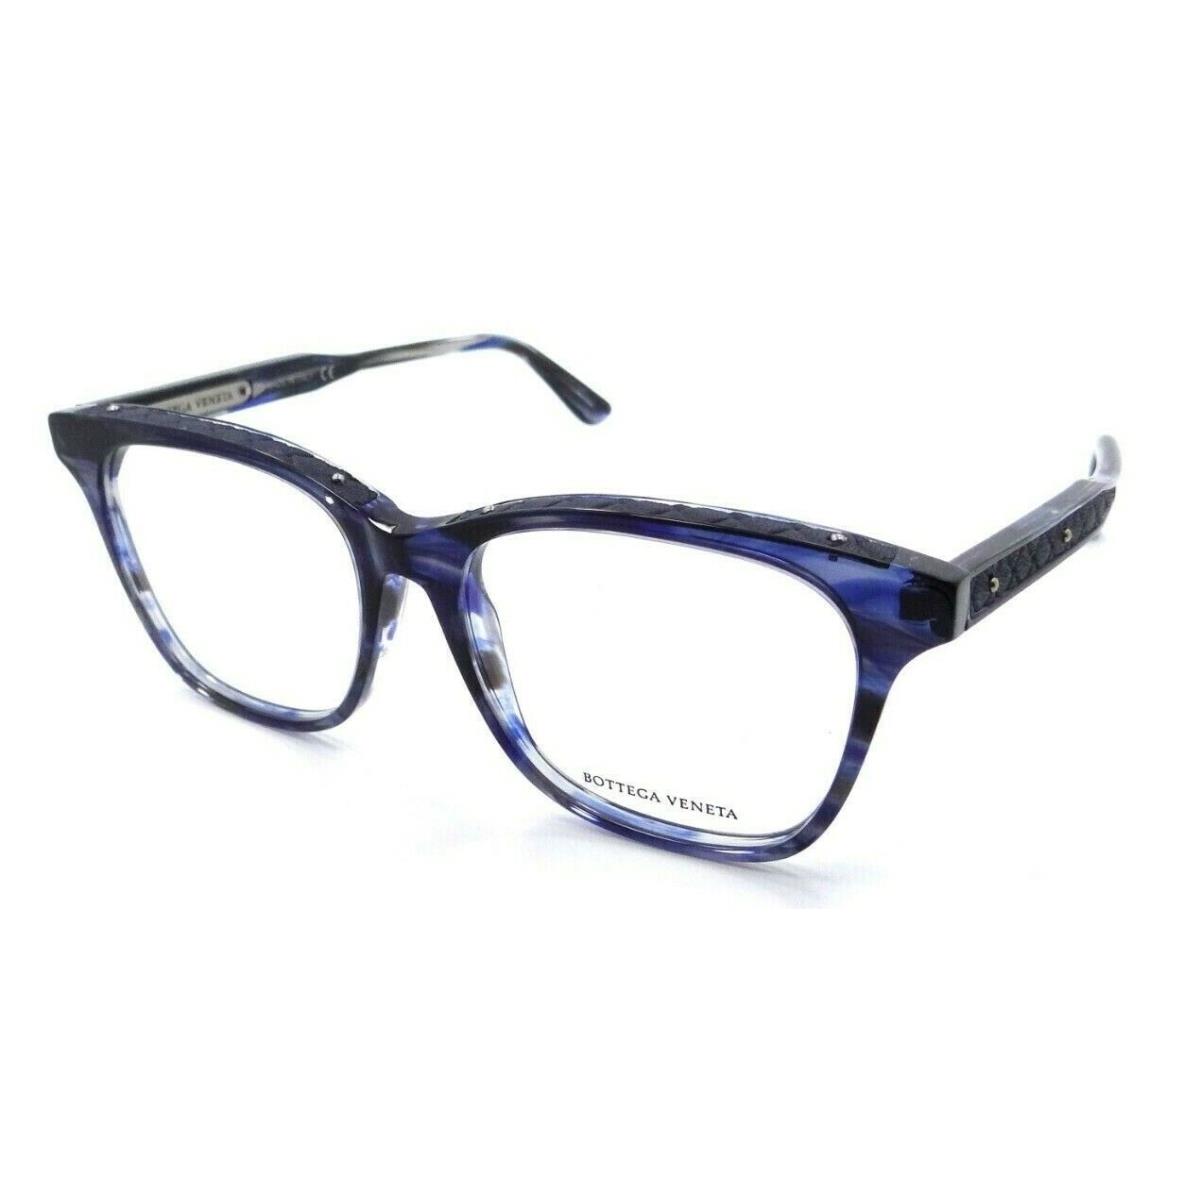 Bottega Veneta Eyeglasses Frames BV0070O 007 53-16-145 Blue Made in Italy